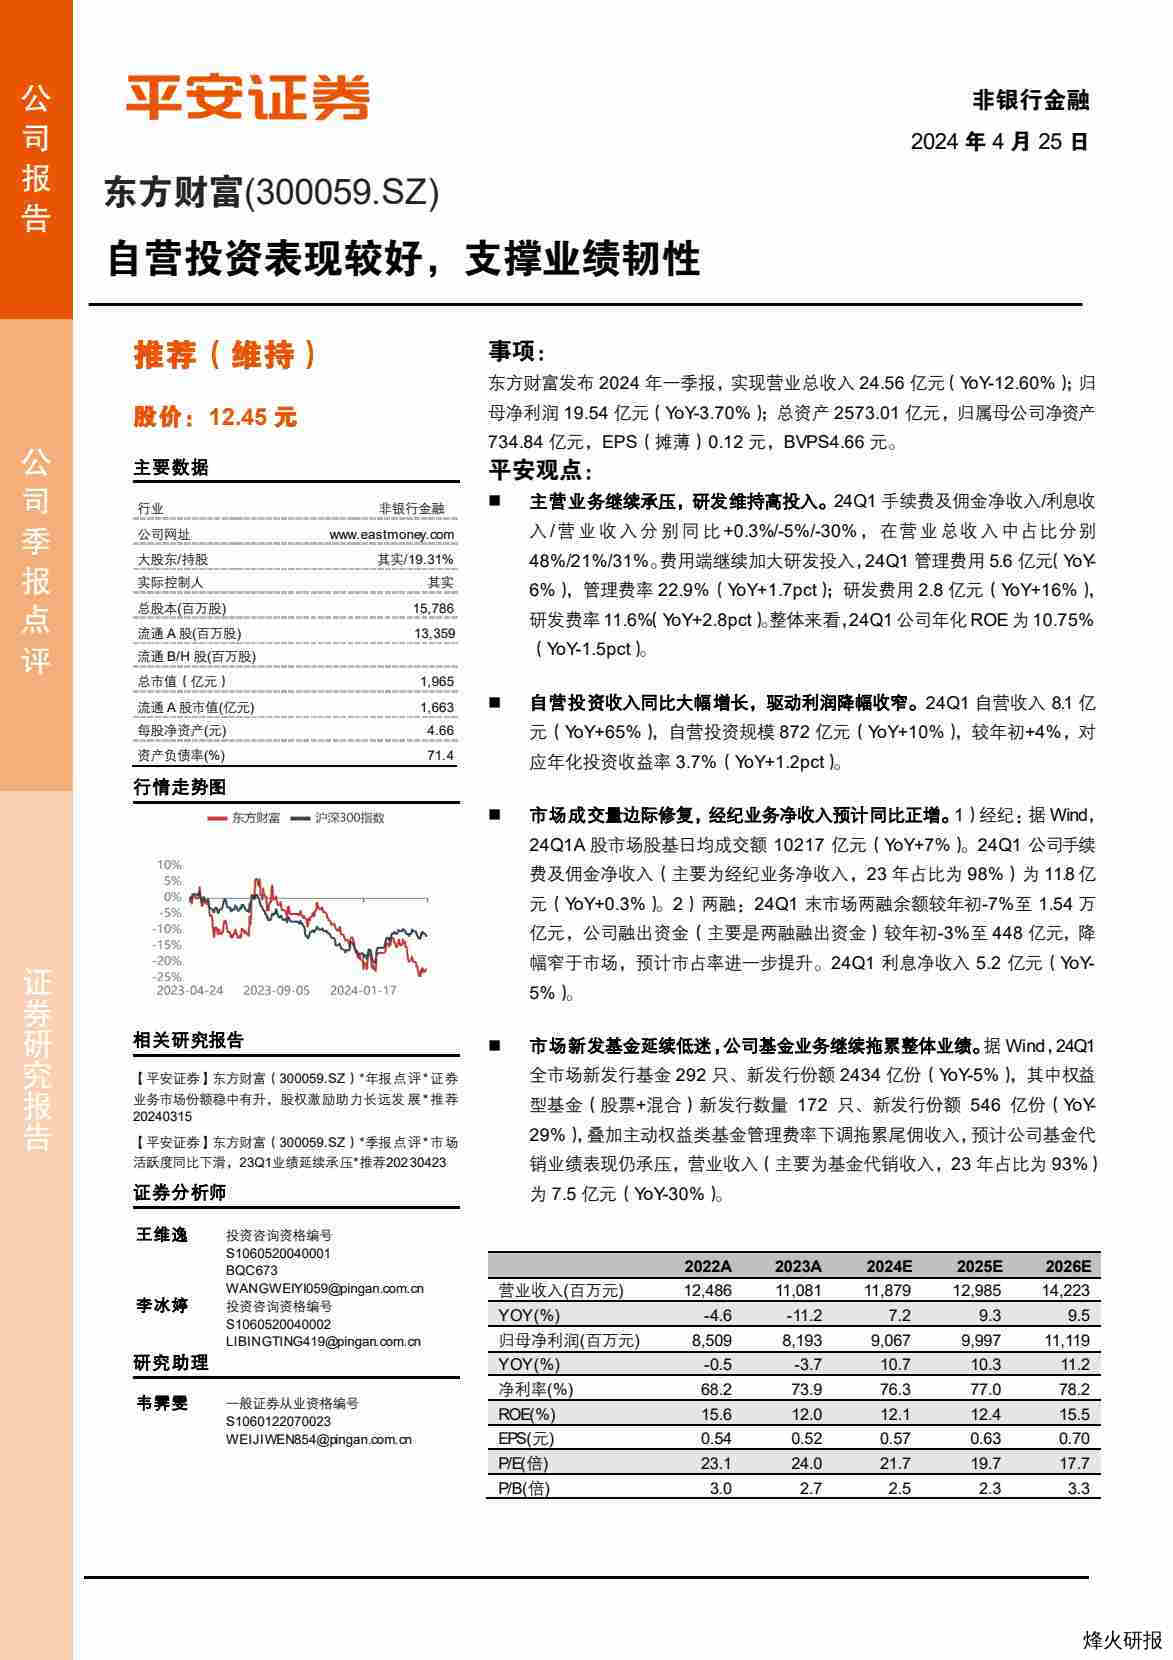 【平安证券】自营投资表现较好，支撑业绩韧性.pdf-第一页